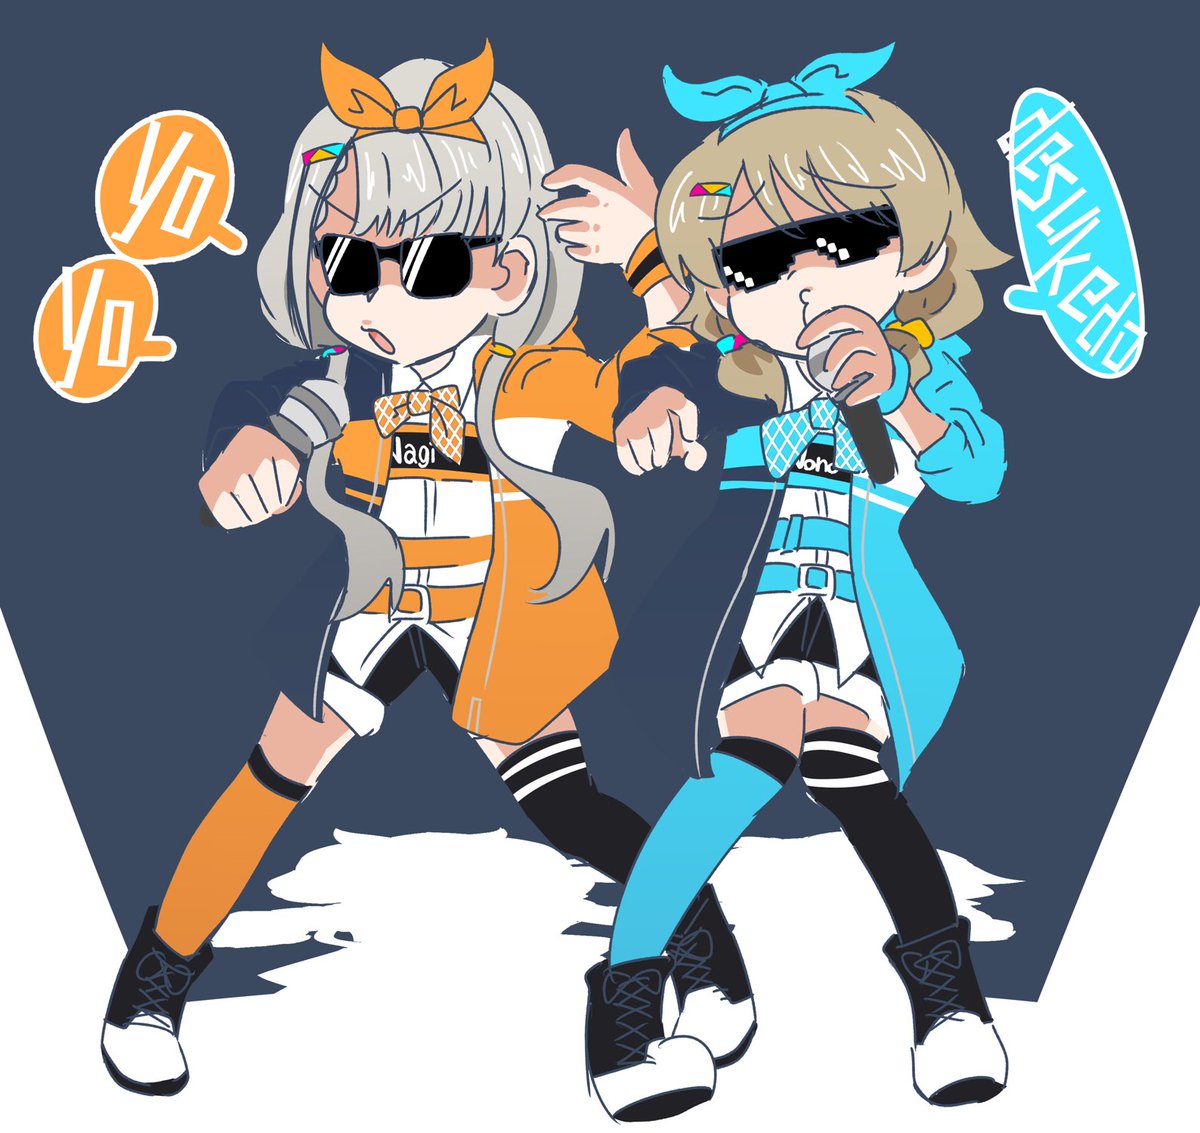 hisakawa nagi multiple girls 2girls asymmetrical legwear sunglasses thighhighs jacket mismatched legwear  illustration images